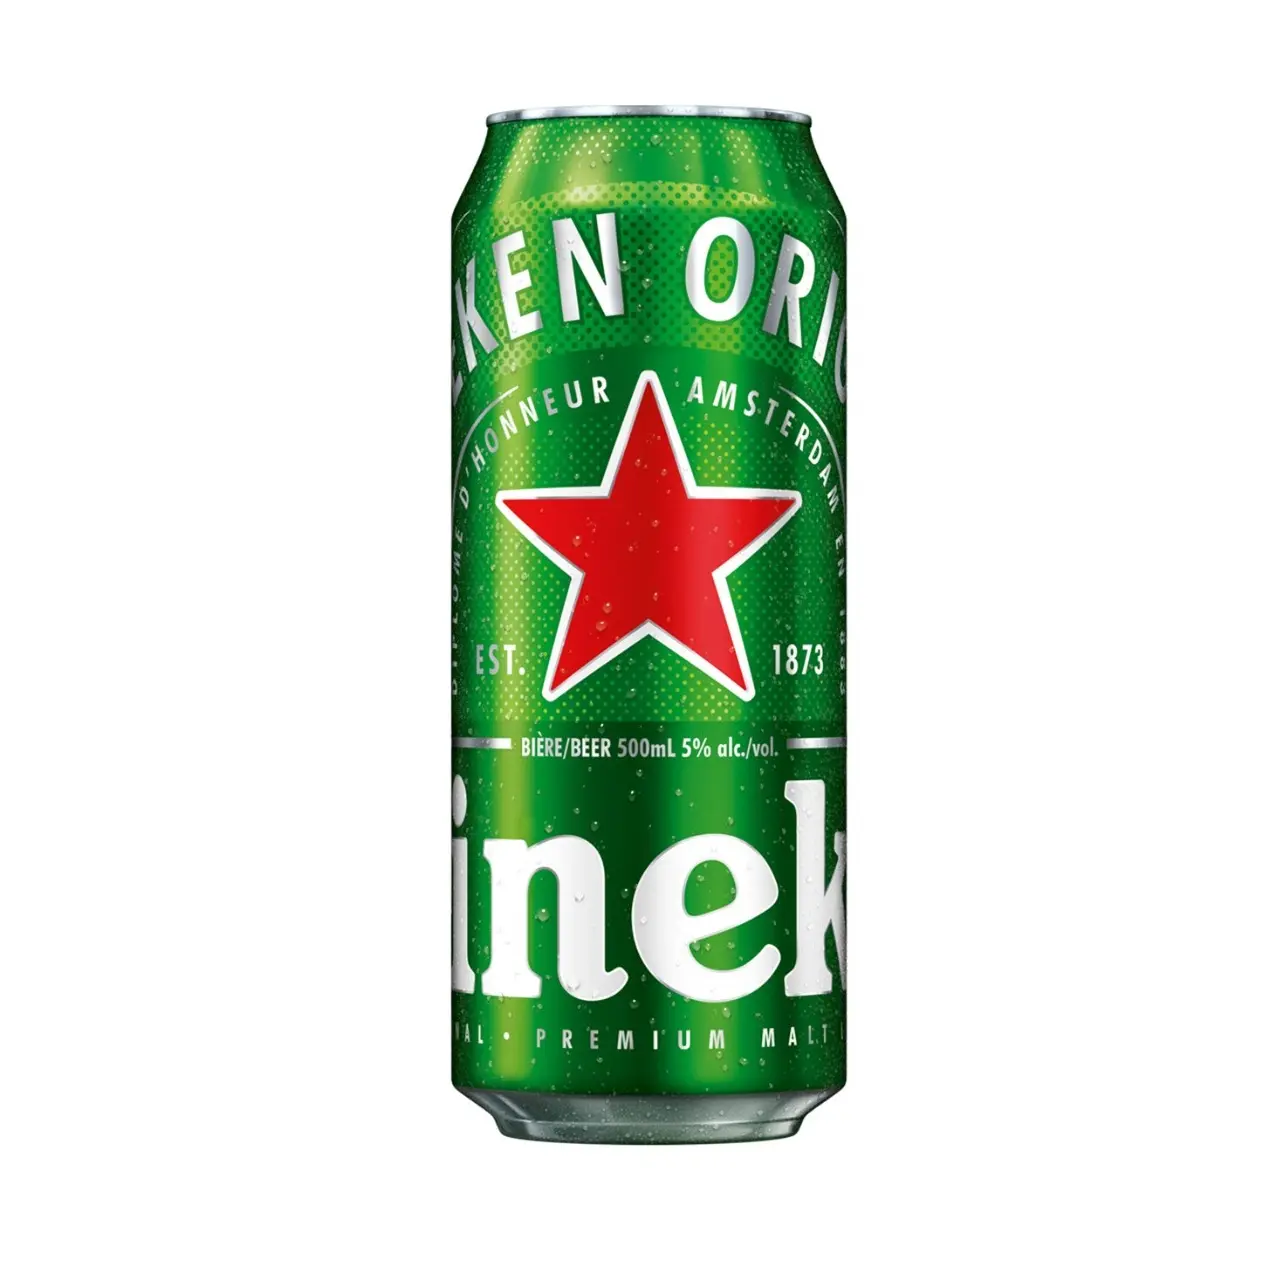 Online acquista/ordina birra Heinekens di alta qualità più grande 330ml X 24 bottiglie/lattine con la migliore qualità delle migliori esportazioni di prezzi dalla Germania